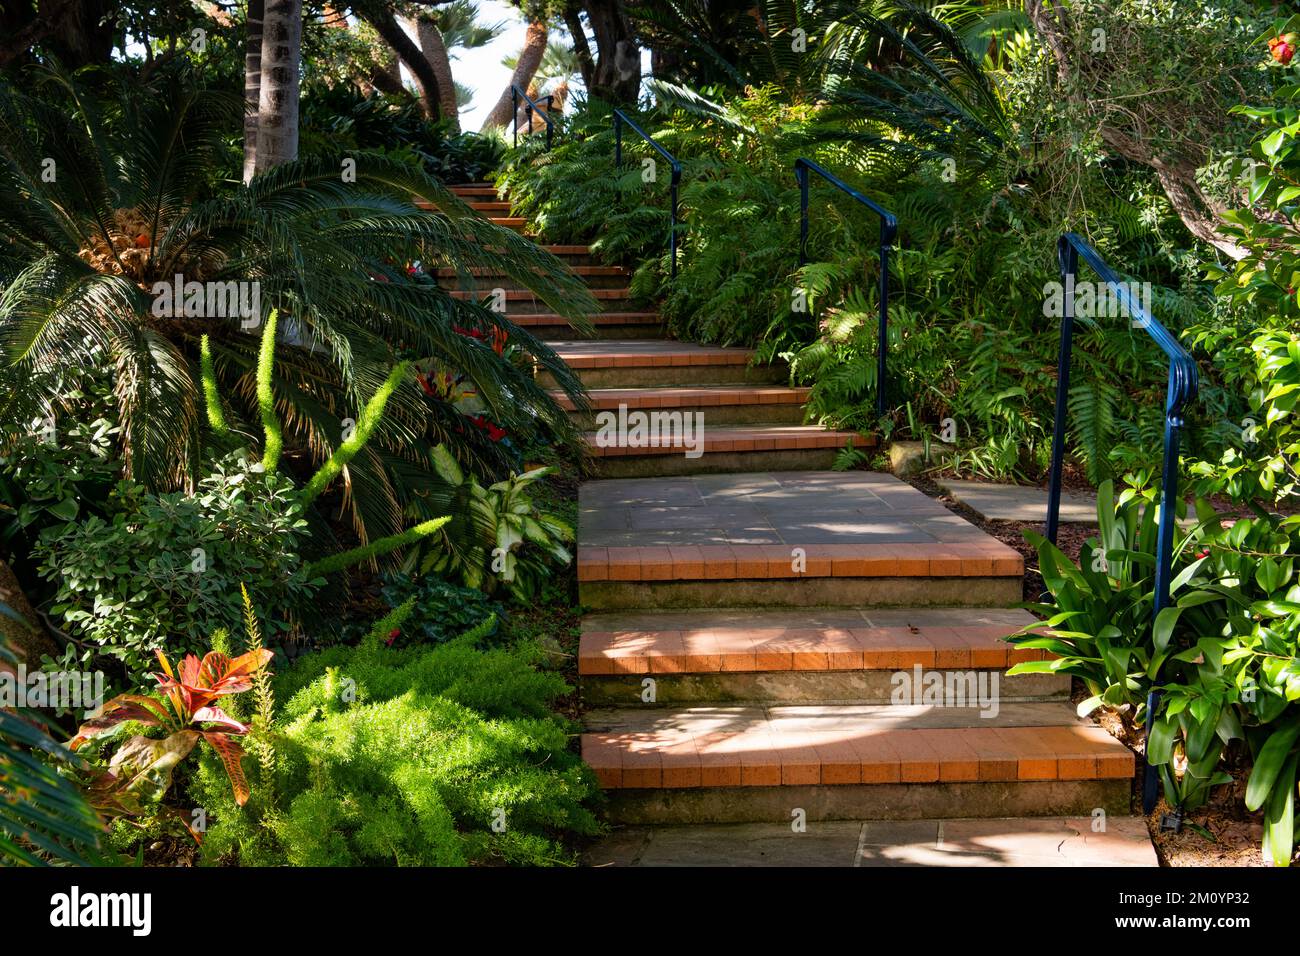 Treppen und Wege, die sich durch üppiges grünes Laub in einem tropischen Garten schlängeln und das Thema des Wohlbefindens darstellen Stockfoto